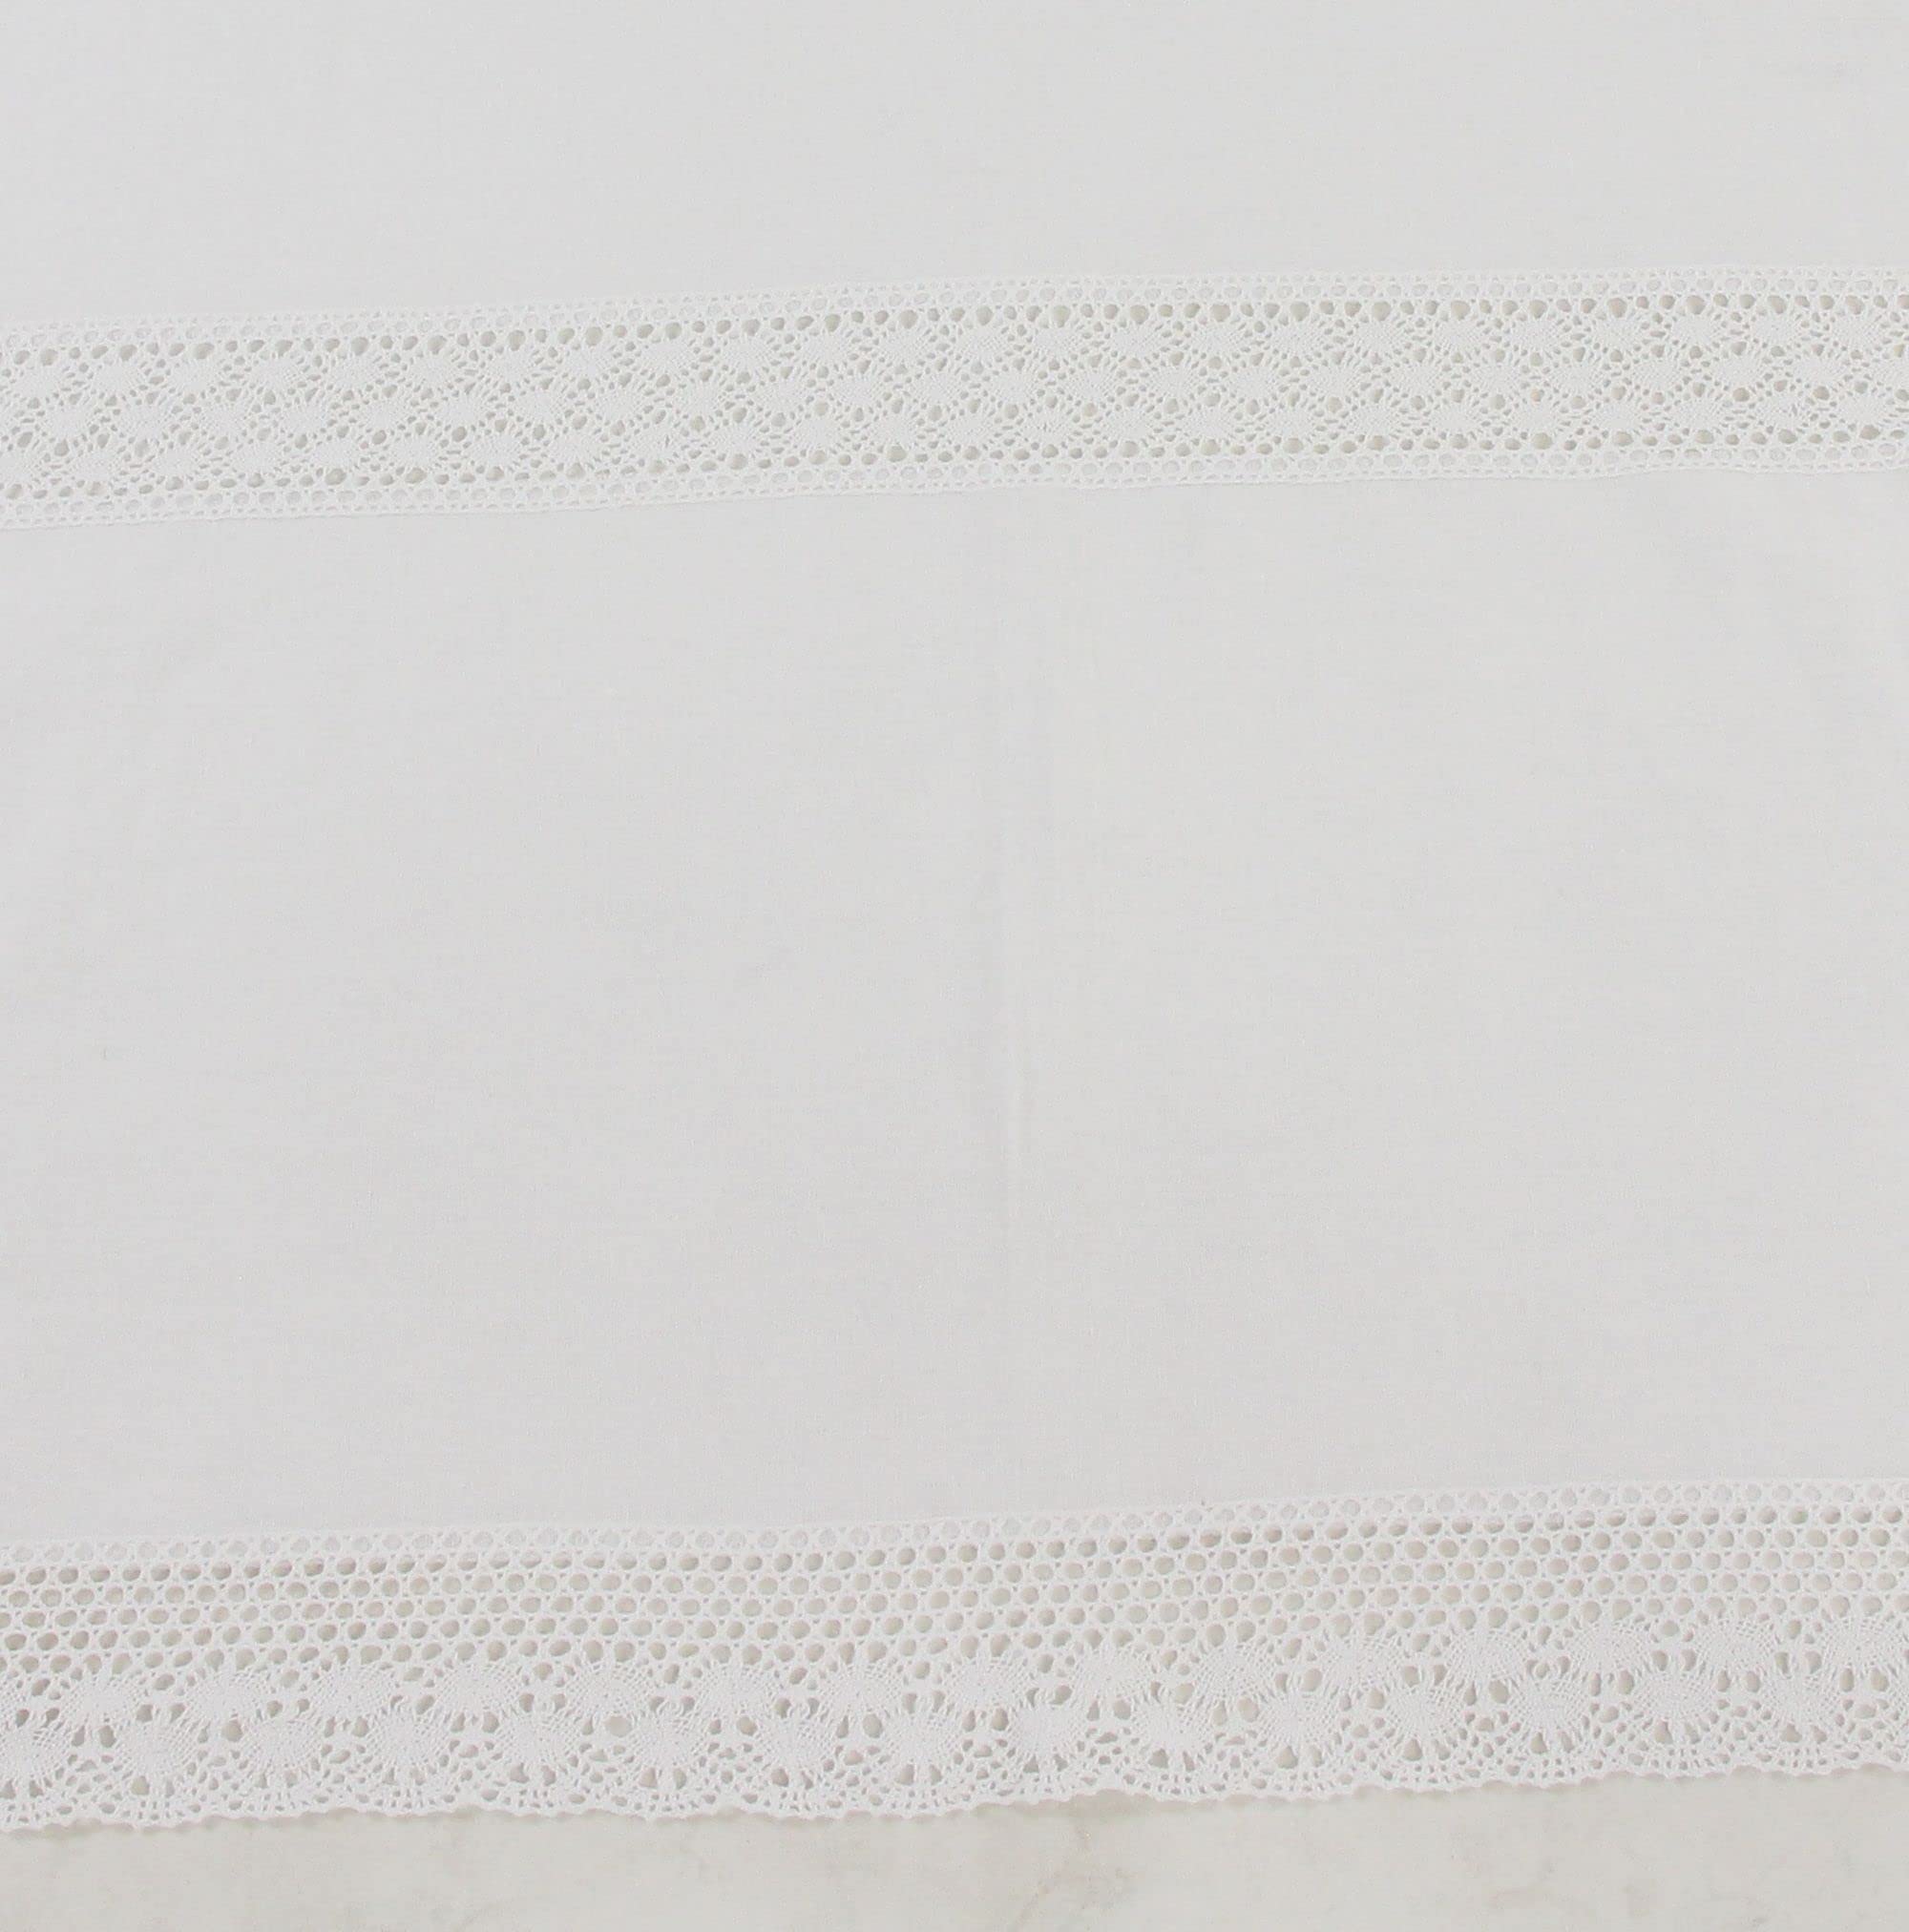 FRANK FLECHTWAREN Tafeldecke Spitzenliebe, nostalgische Häkelspitze, weißer Grundstoff, 70% Baumwolle, 30% Polyester, Maße: 140 x 240 cm